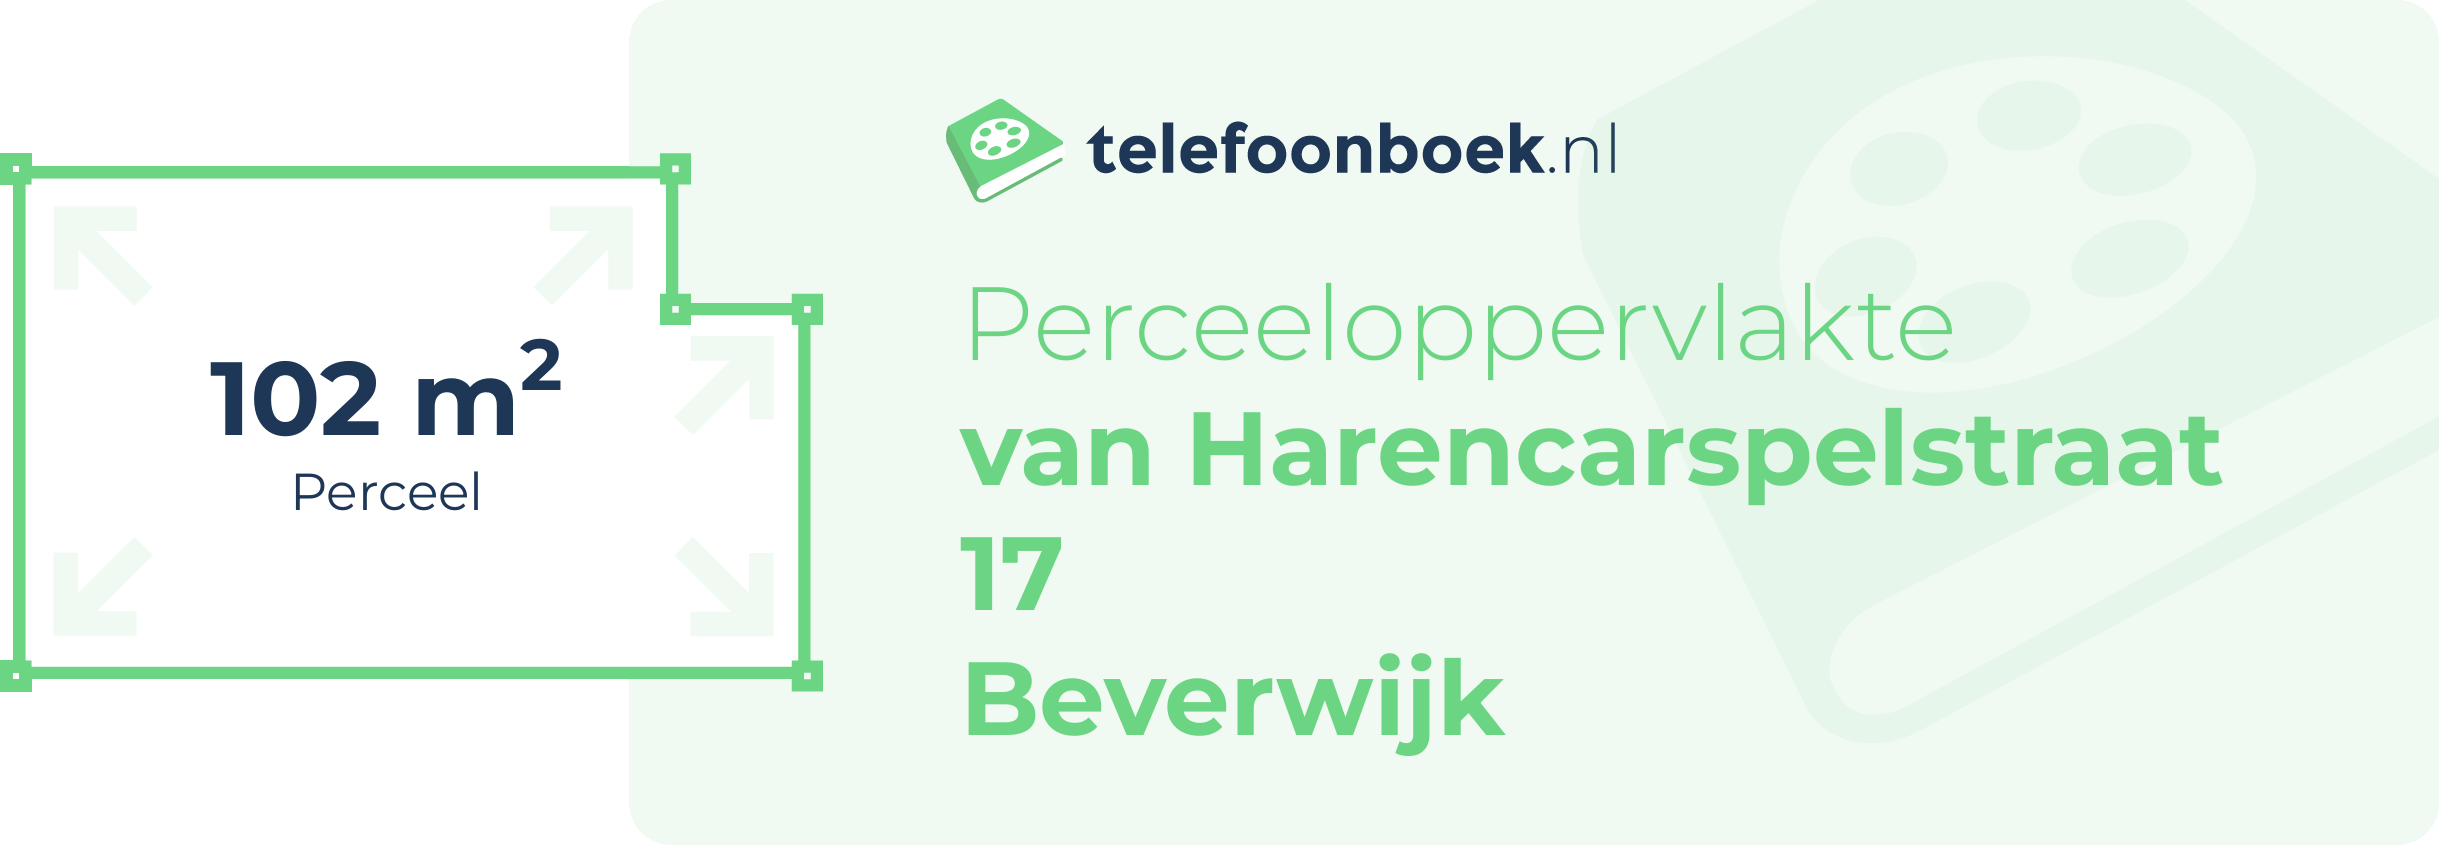 Perceeloppervlakte Van Harencarspelstraat 17 Beverwijk